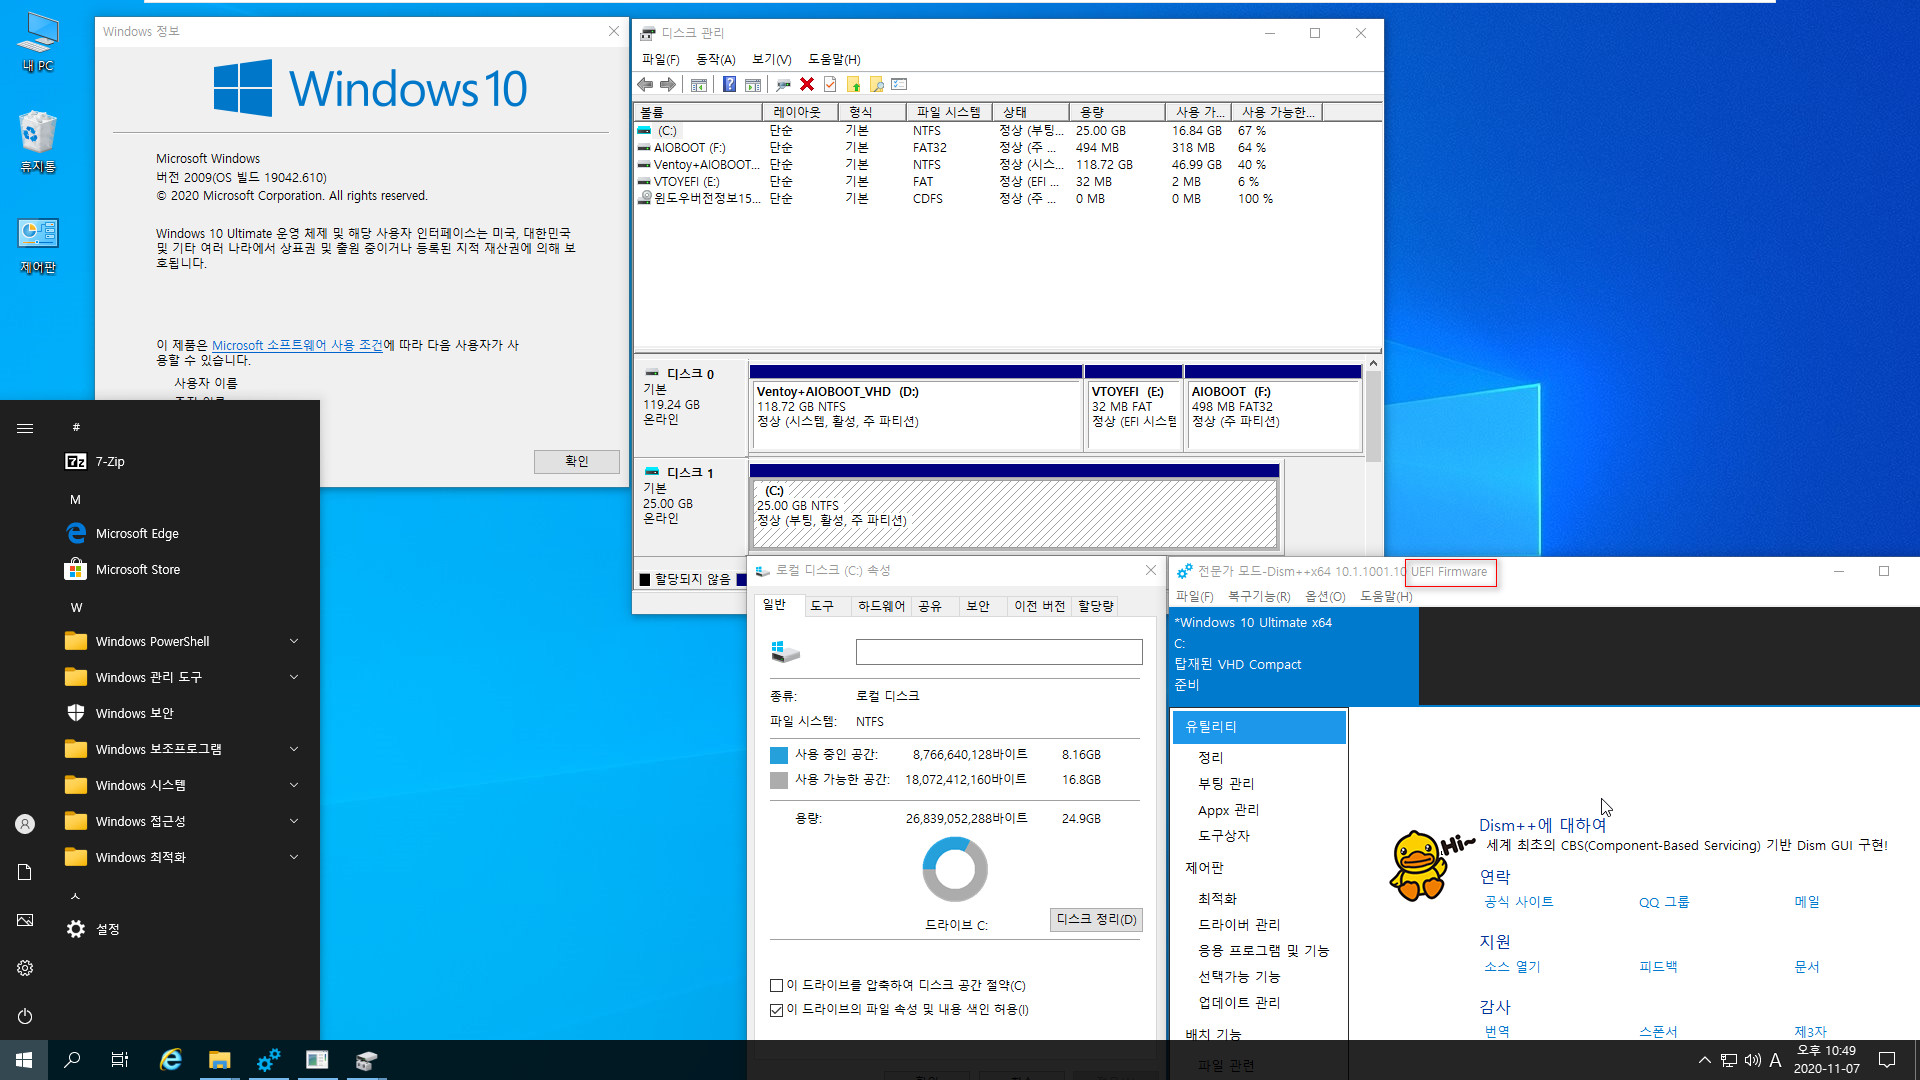 3.Kong_Windows10_v2009_19042.610_x64.vhd 에 Imagew64.exe 으로 복구하여 부팅 테스트 - 3번째는 드라이브 복구 메시지 나오지 않음 2020-11-07_224943.jpg